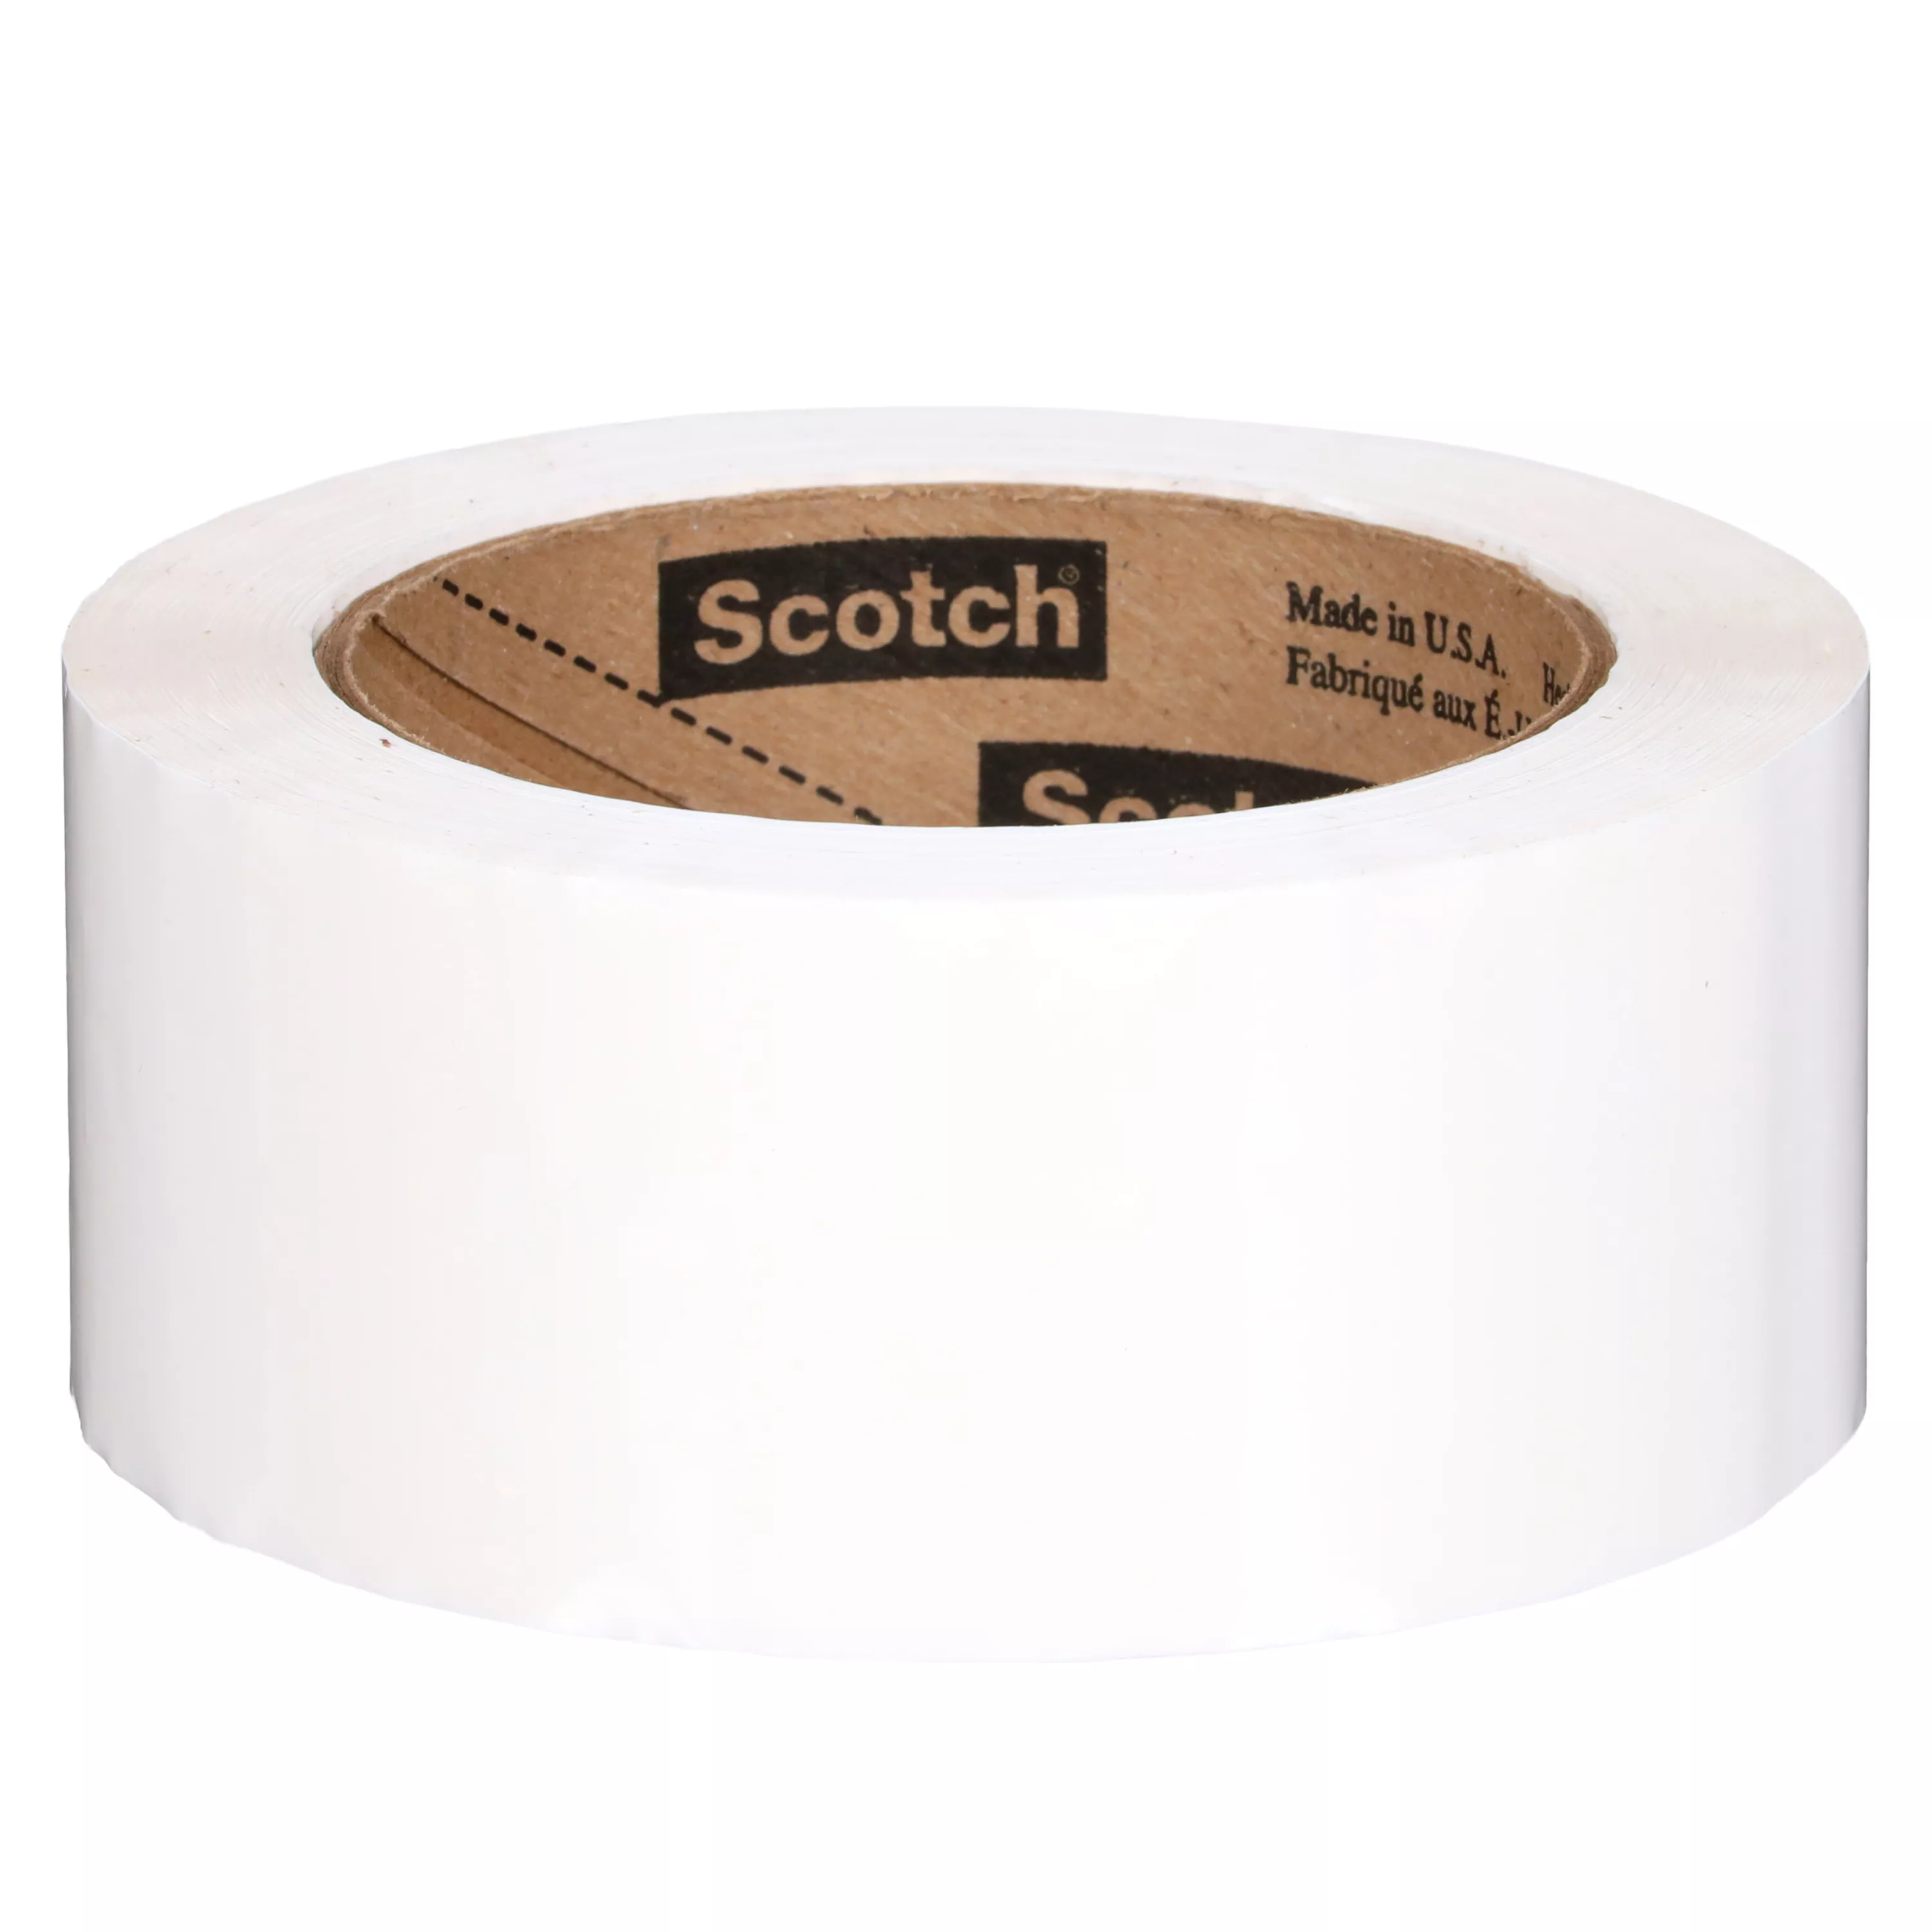 SKU 7000123427 | Scotch® Box Sealing Tape 371